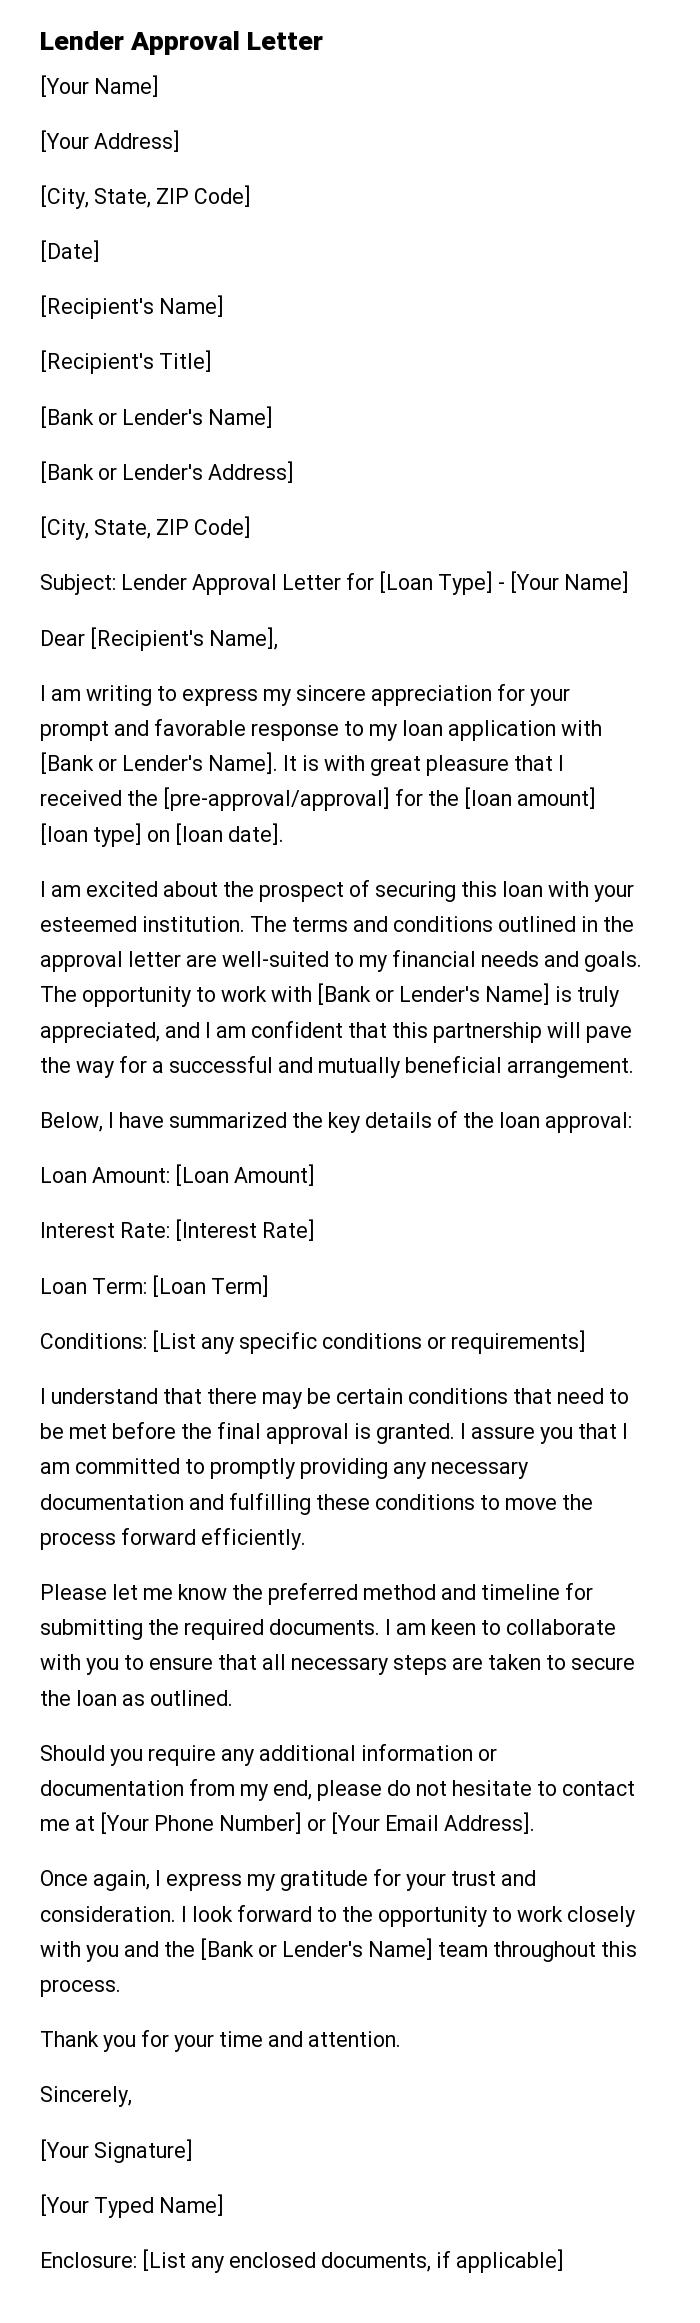 Lender Approval Letter